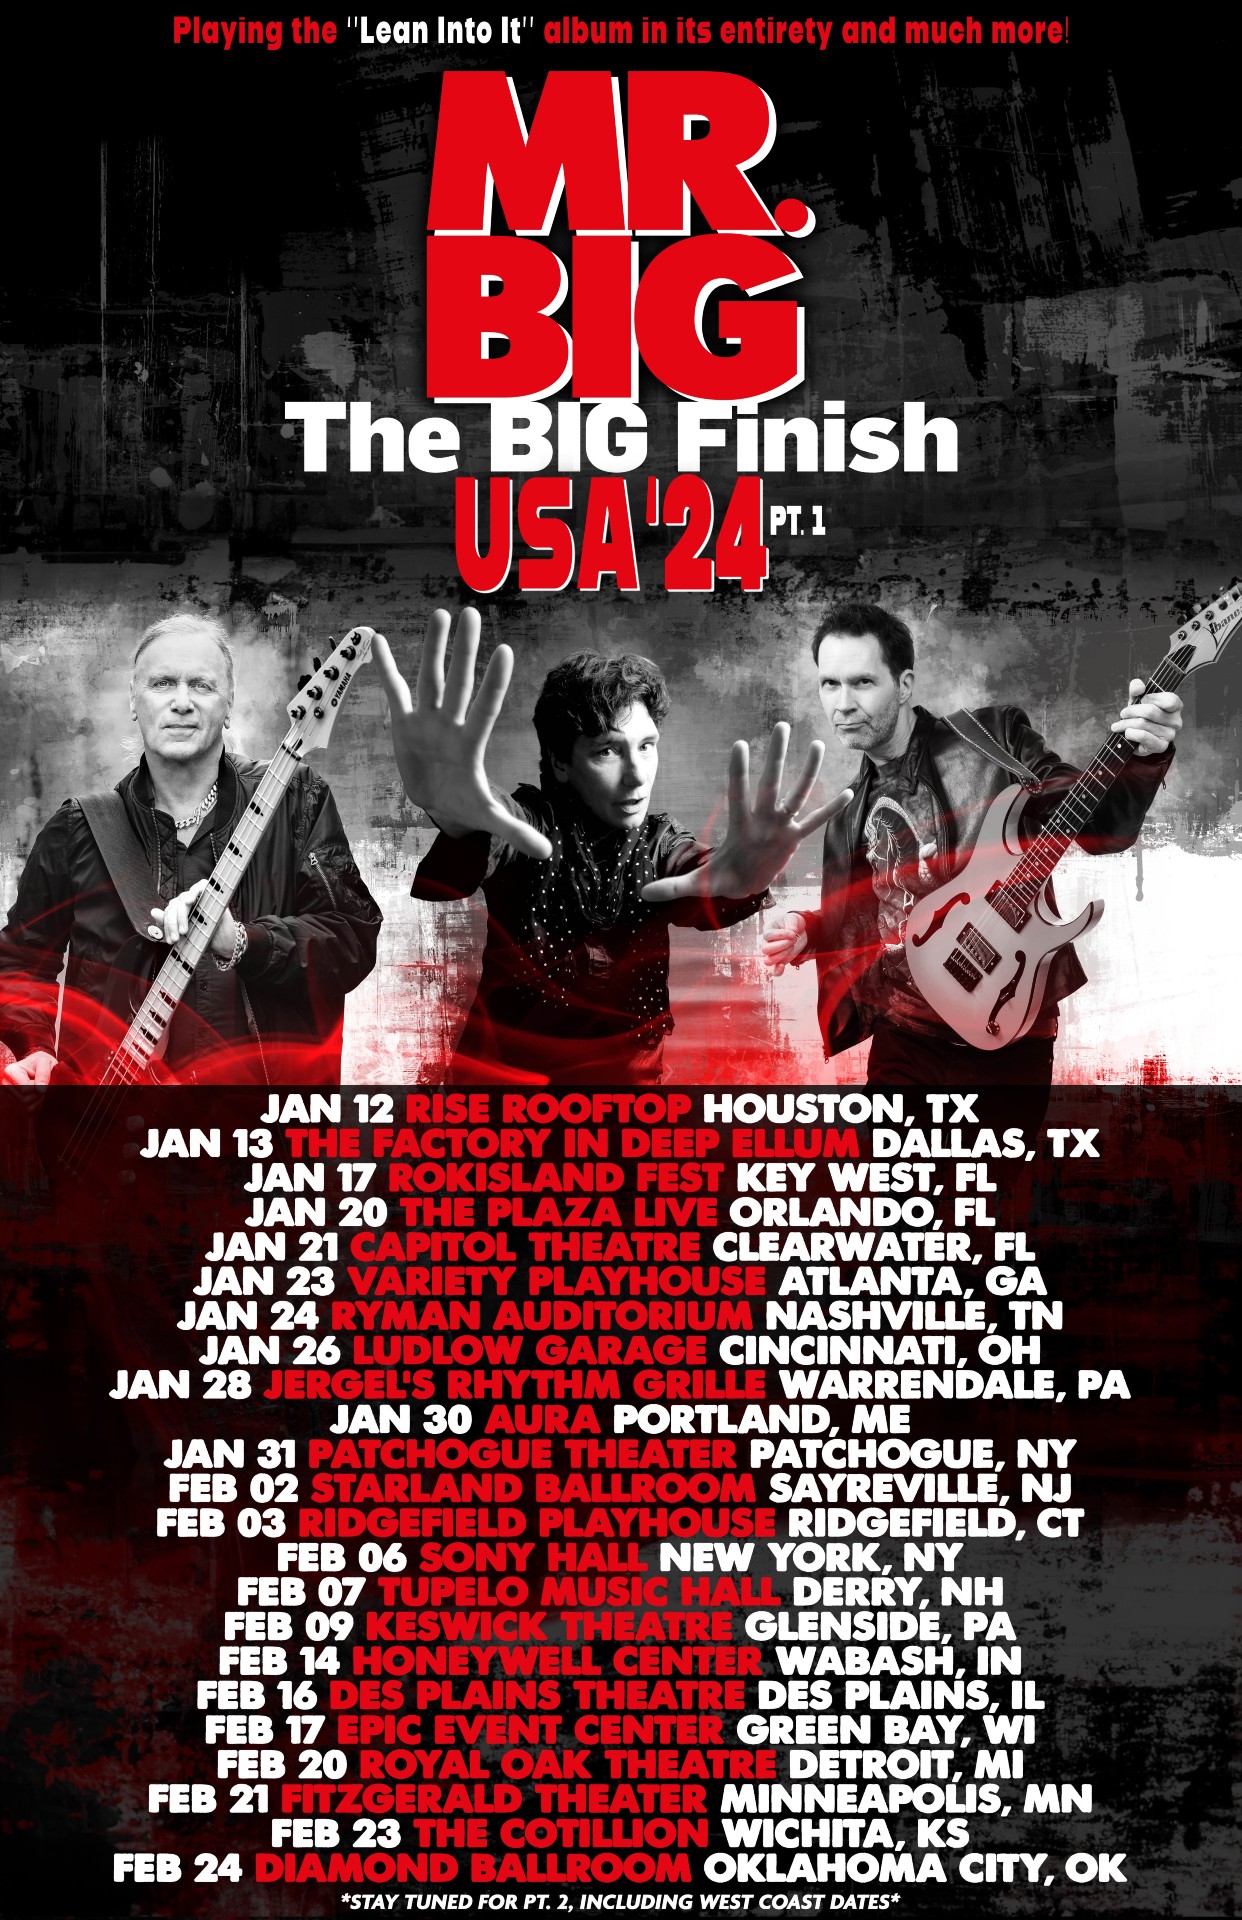 Mr. Big “The Big Finish” tour poster